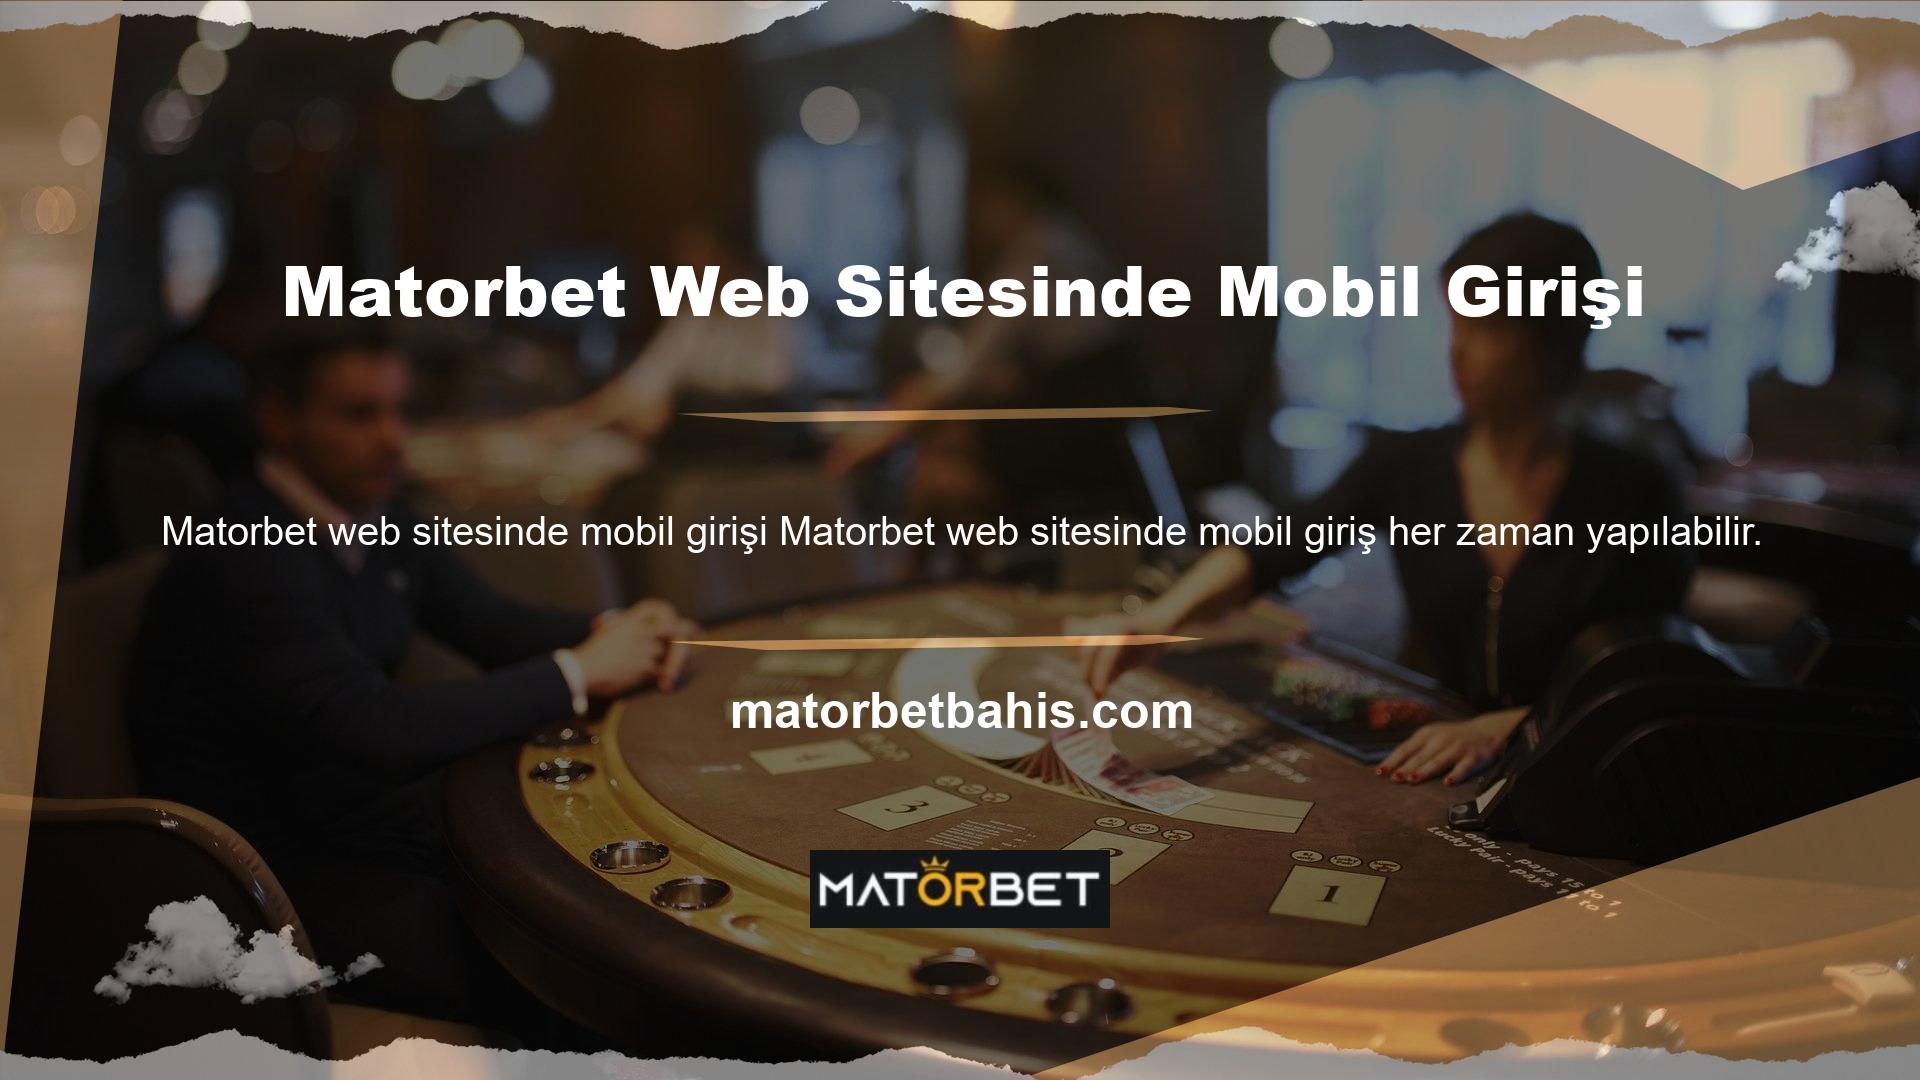 Matorbet web sitesi en iyi mobil entegrasyonlardan birine sahiptir